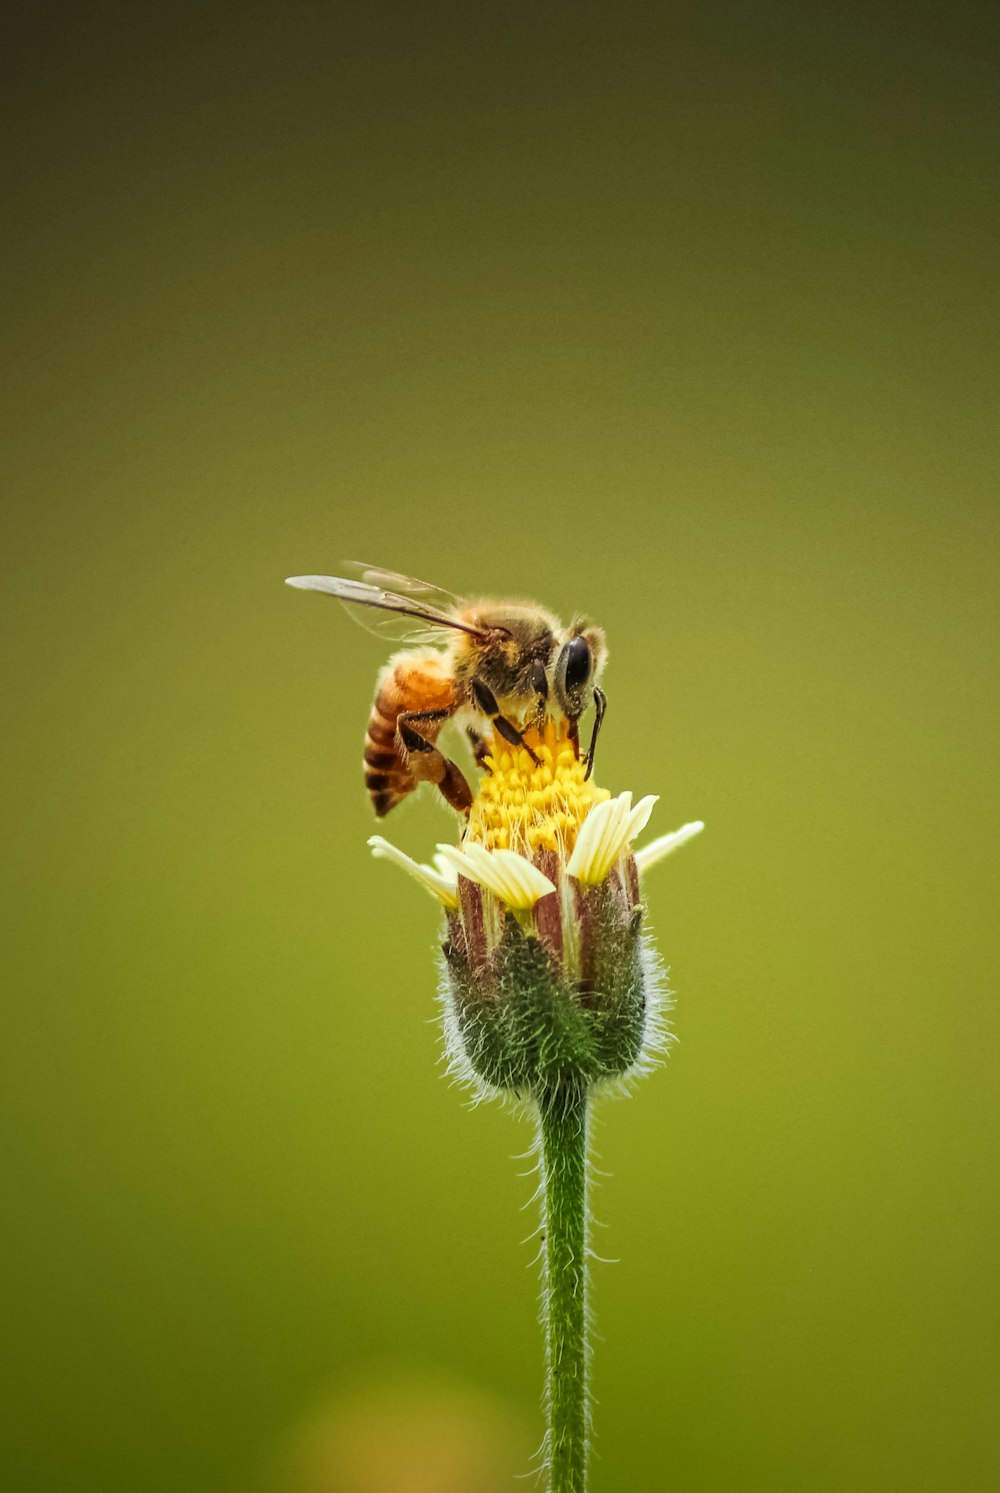 abelha empoleirada na flor amarela em fotografia de perto durante o dia